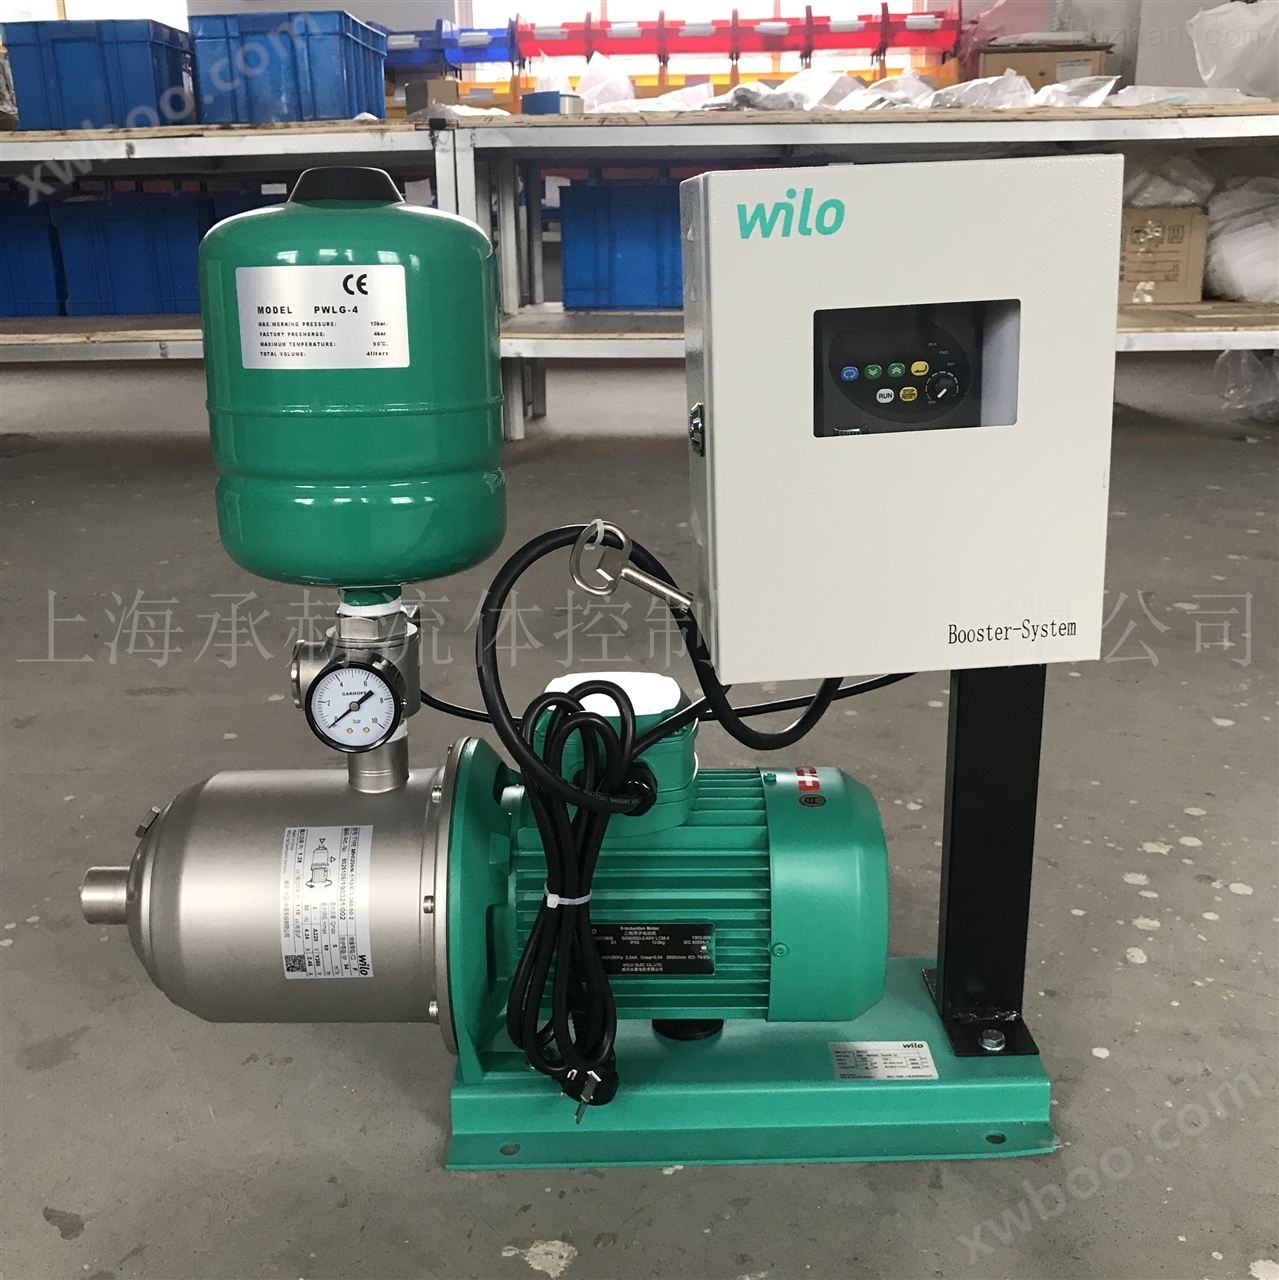 威乐原装别墅变频供水泵MHI406哪里便宜 变频增压泵